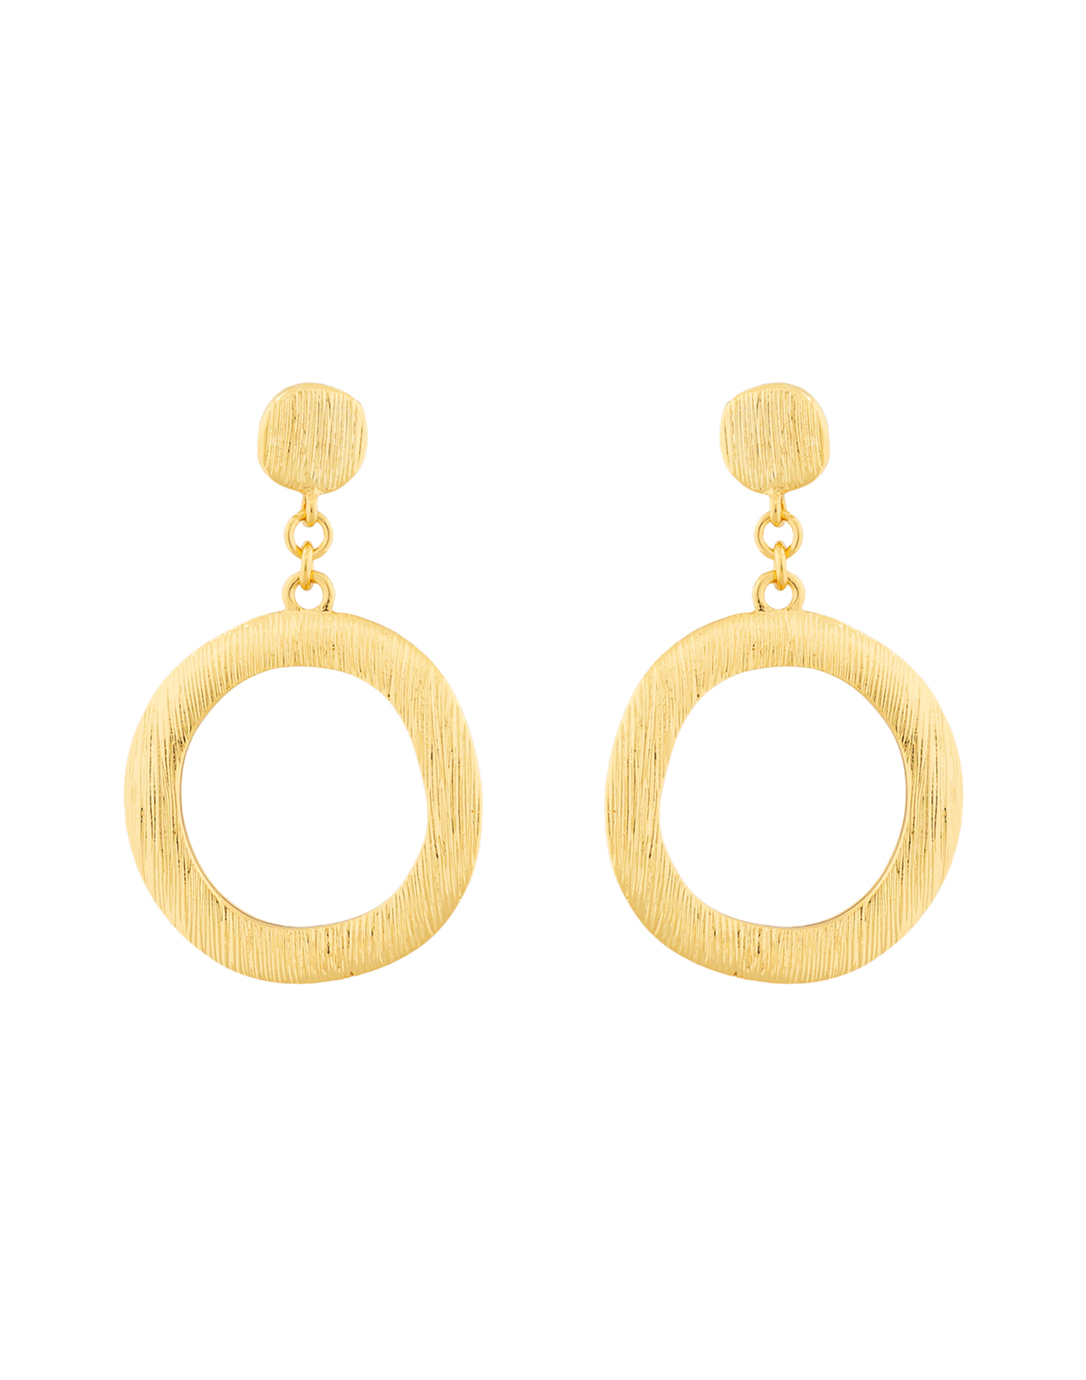 drop hoop earrings gold